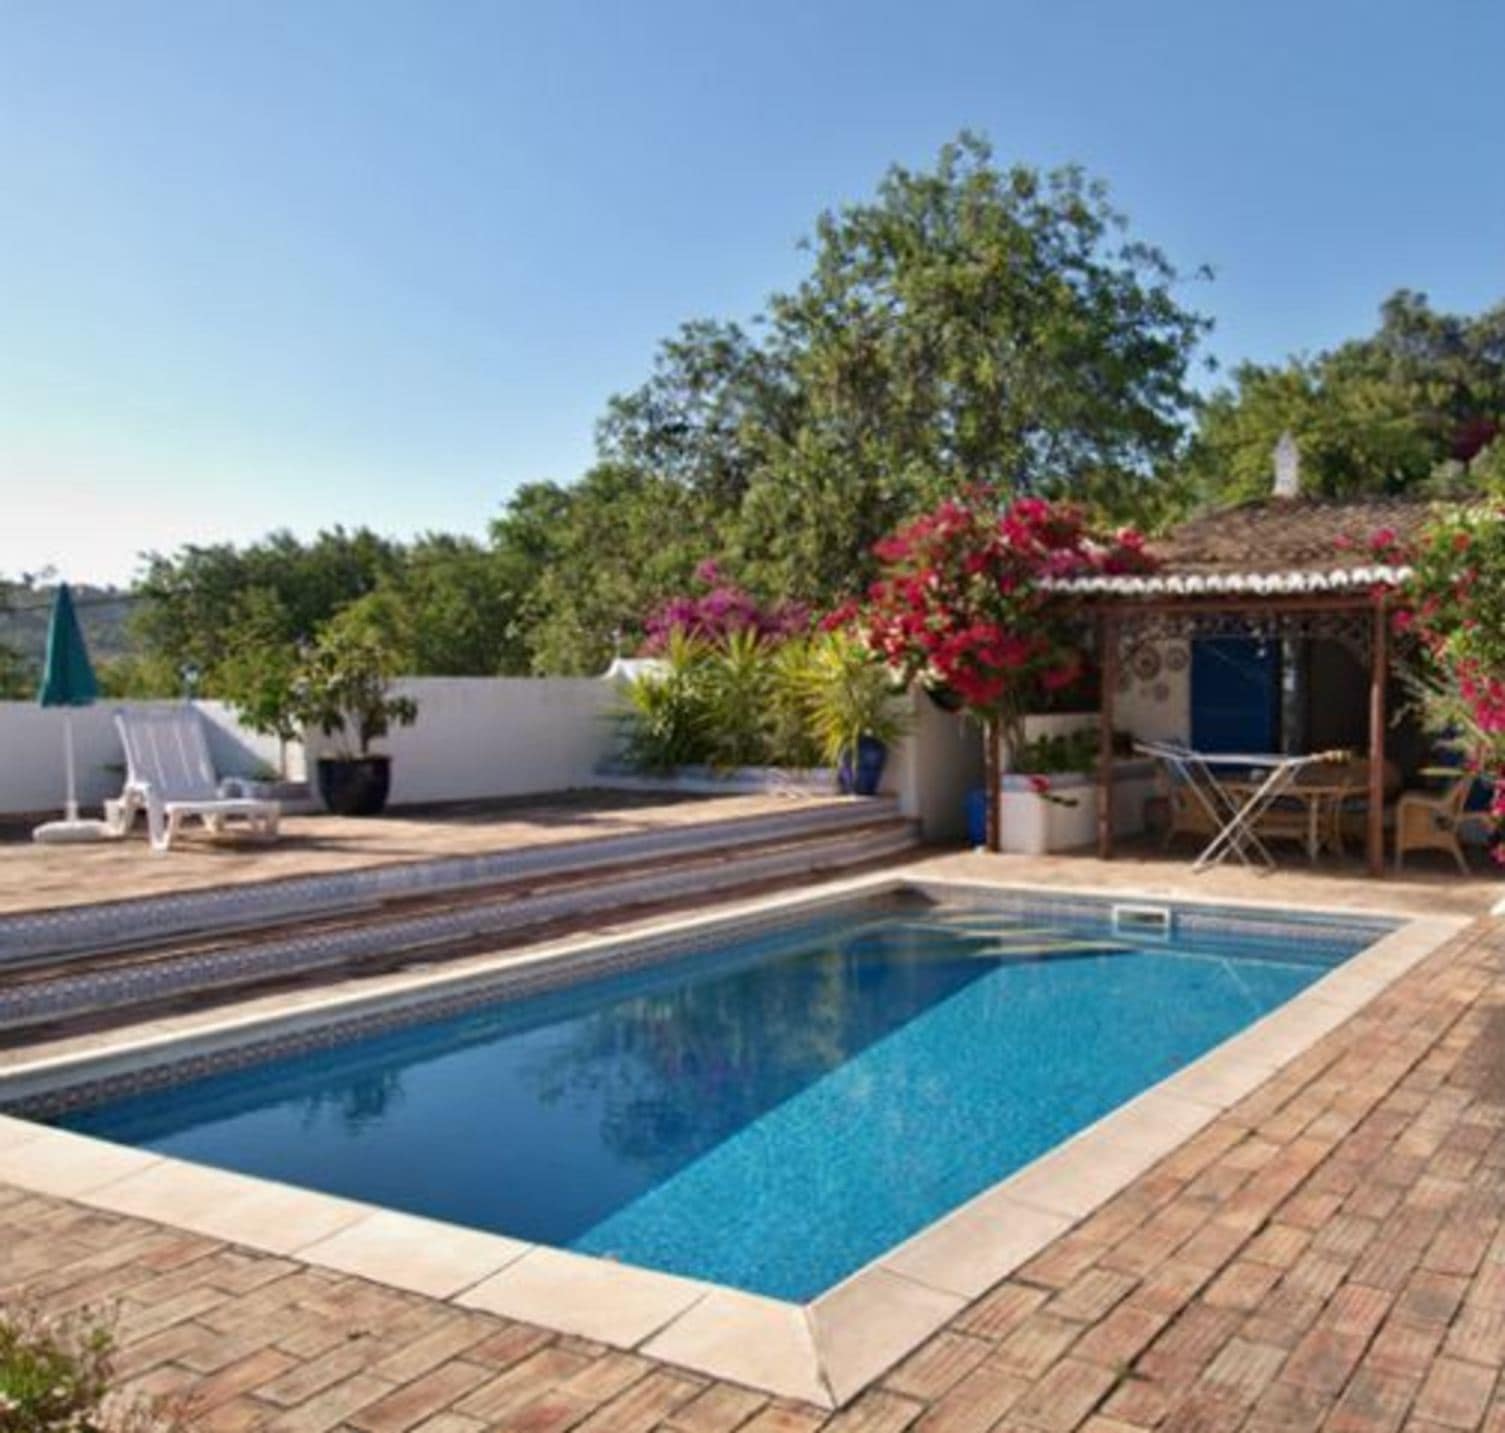 Villa avec piscine privée et terrasse ombragée, location villa Portugal